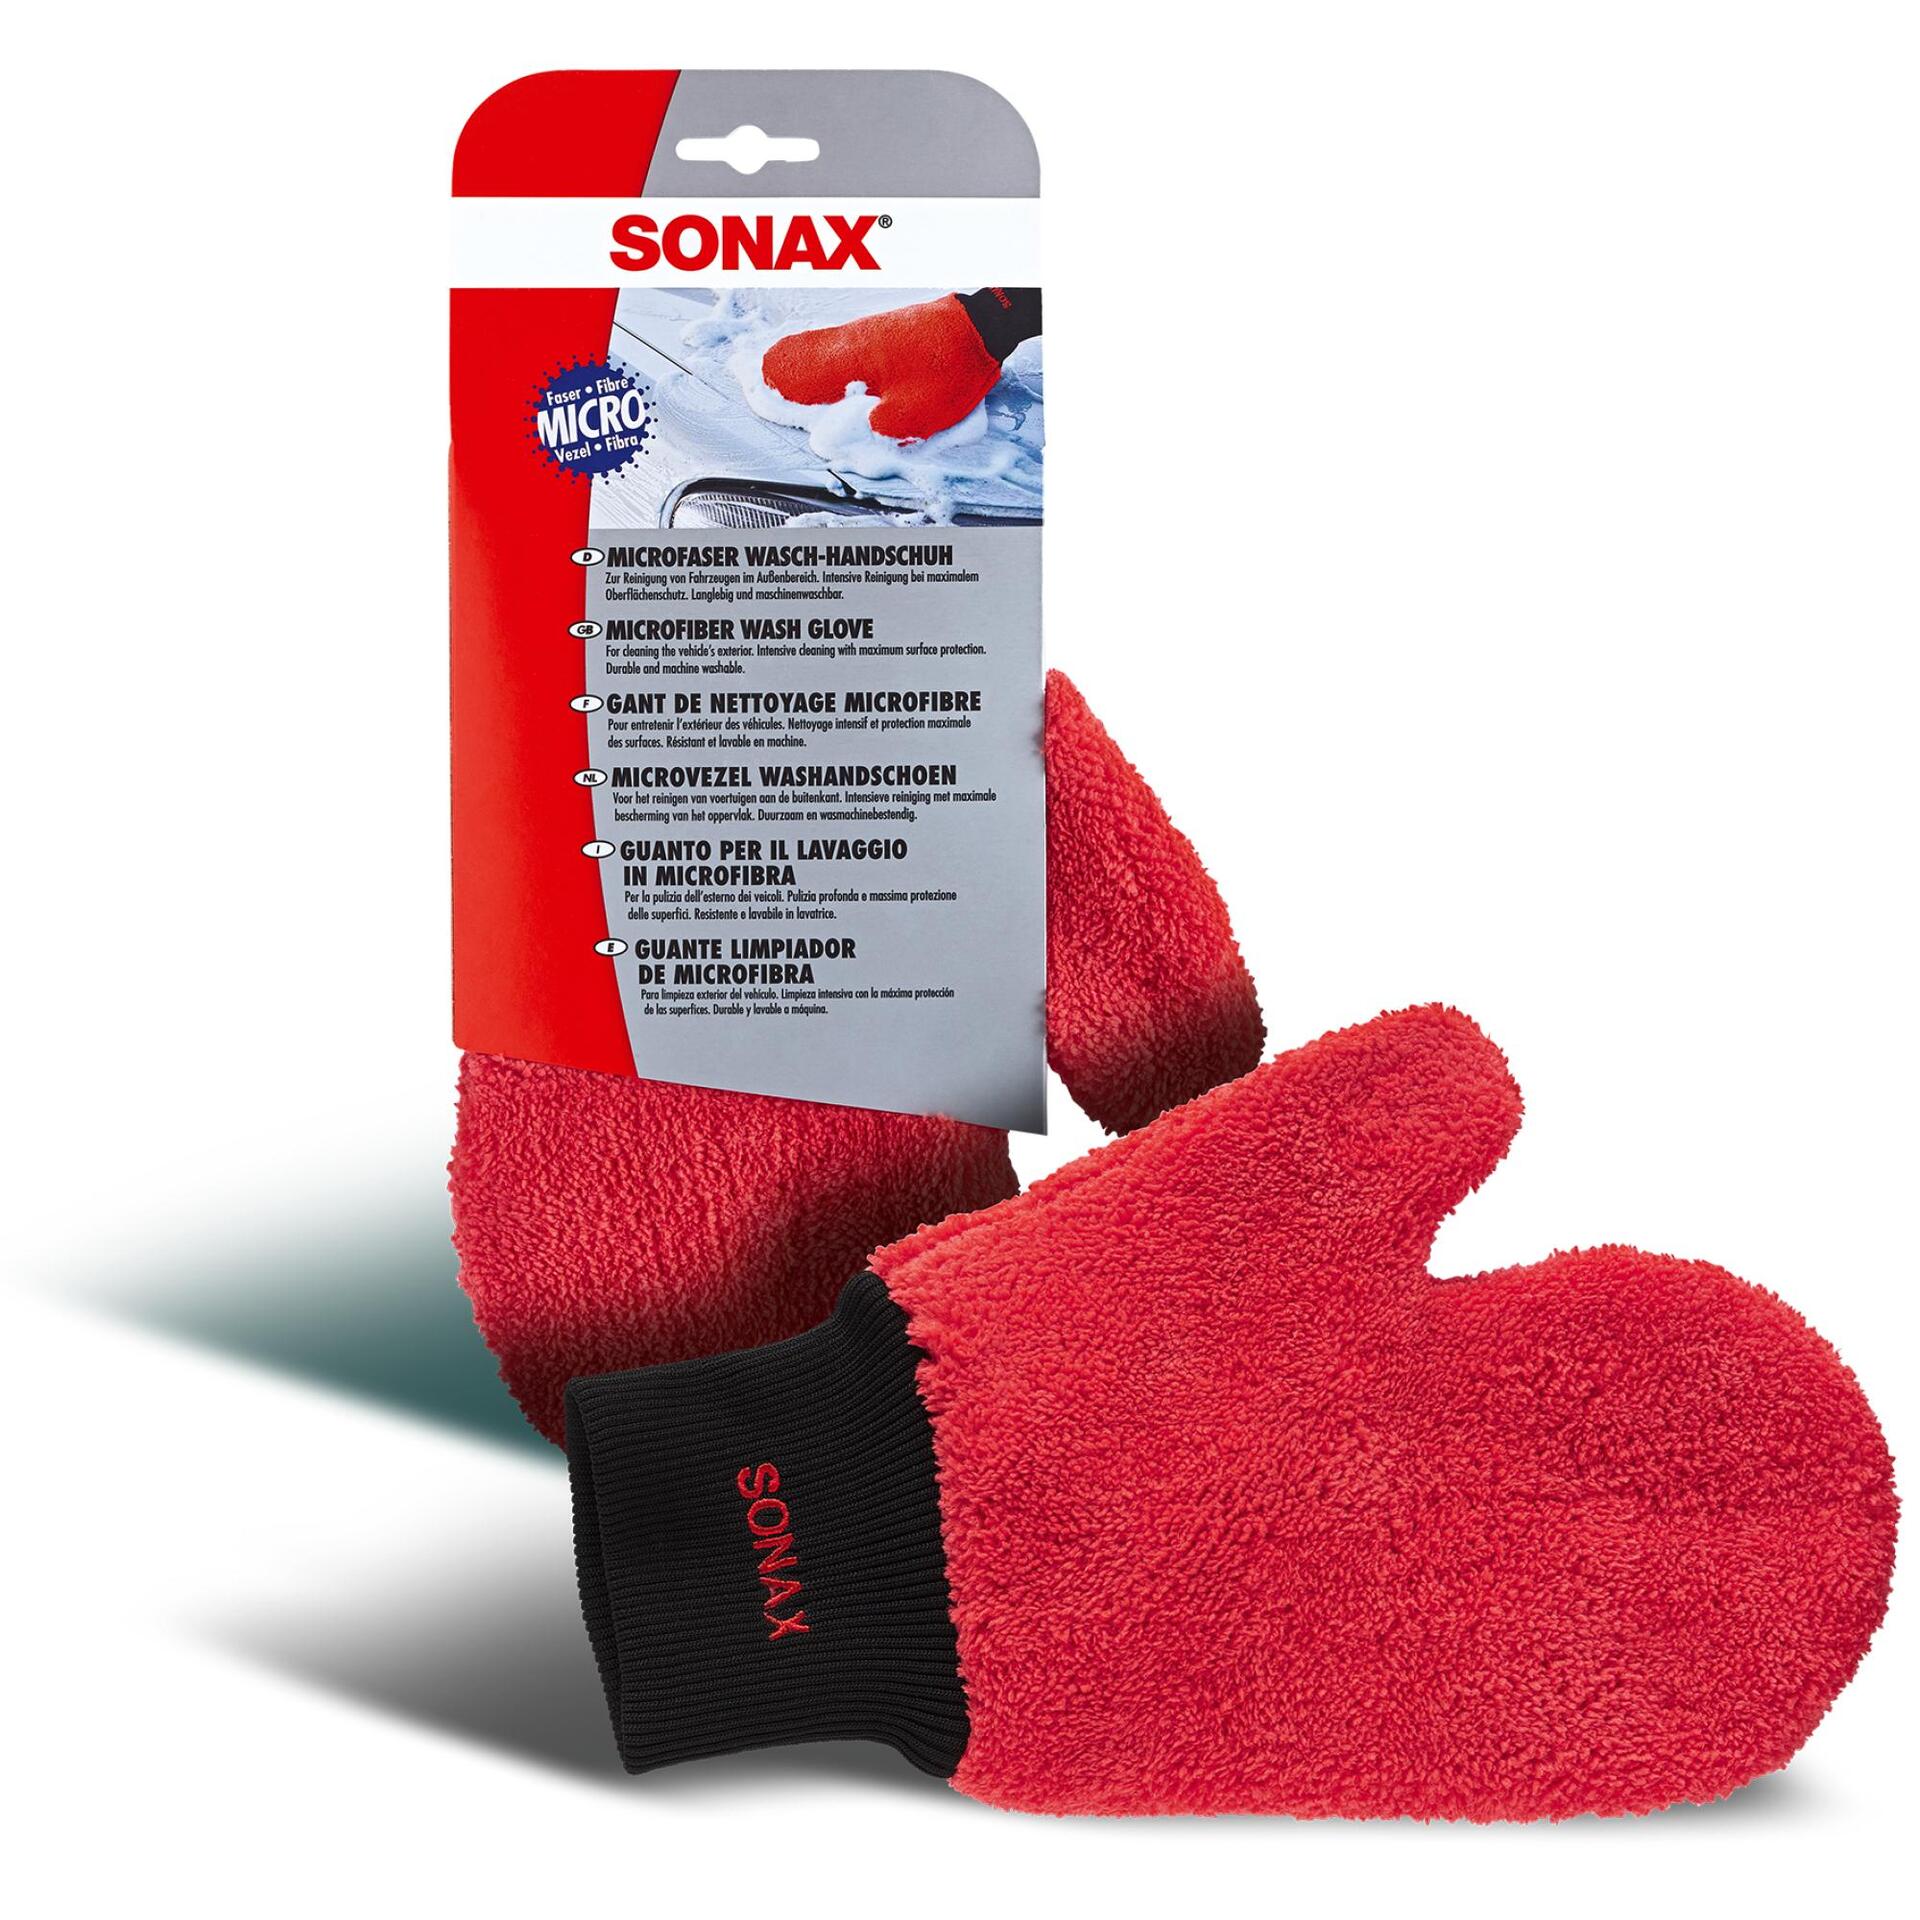 Sonax Microfaser Wasch Handschuh